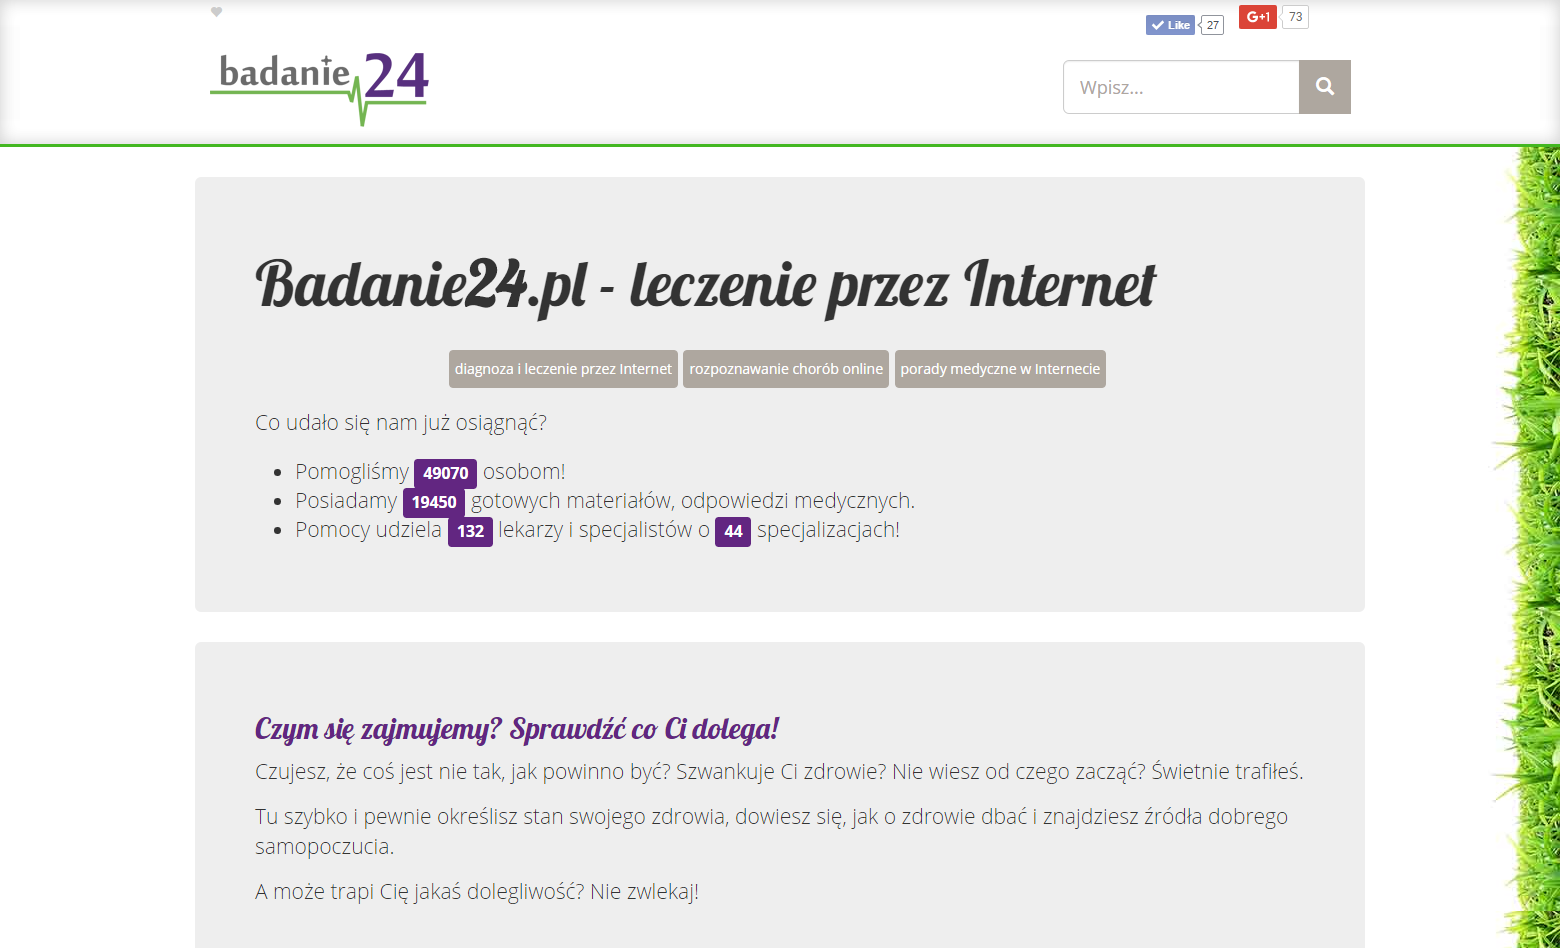 Project Badanie24.pl